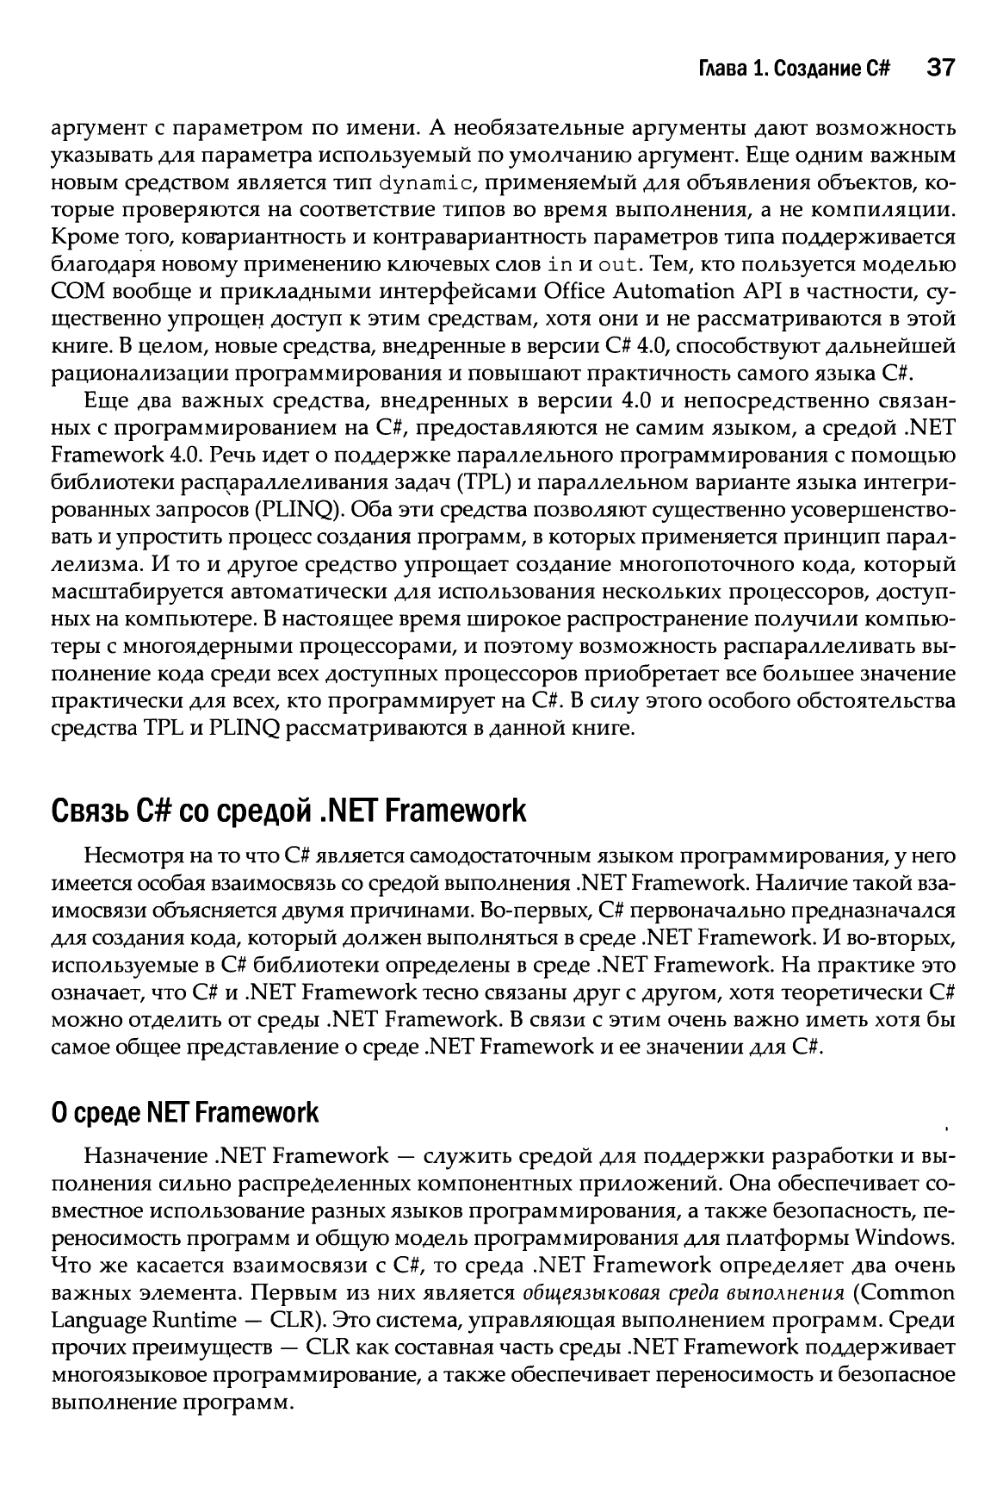 Связь С# со средой .NET Framework